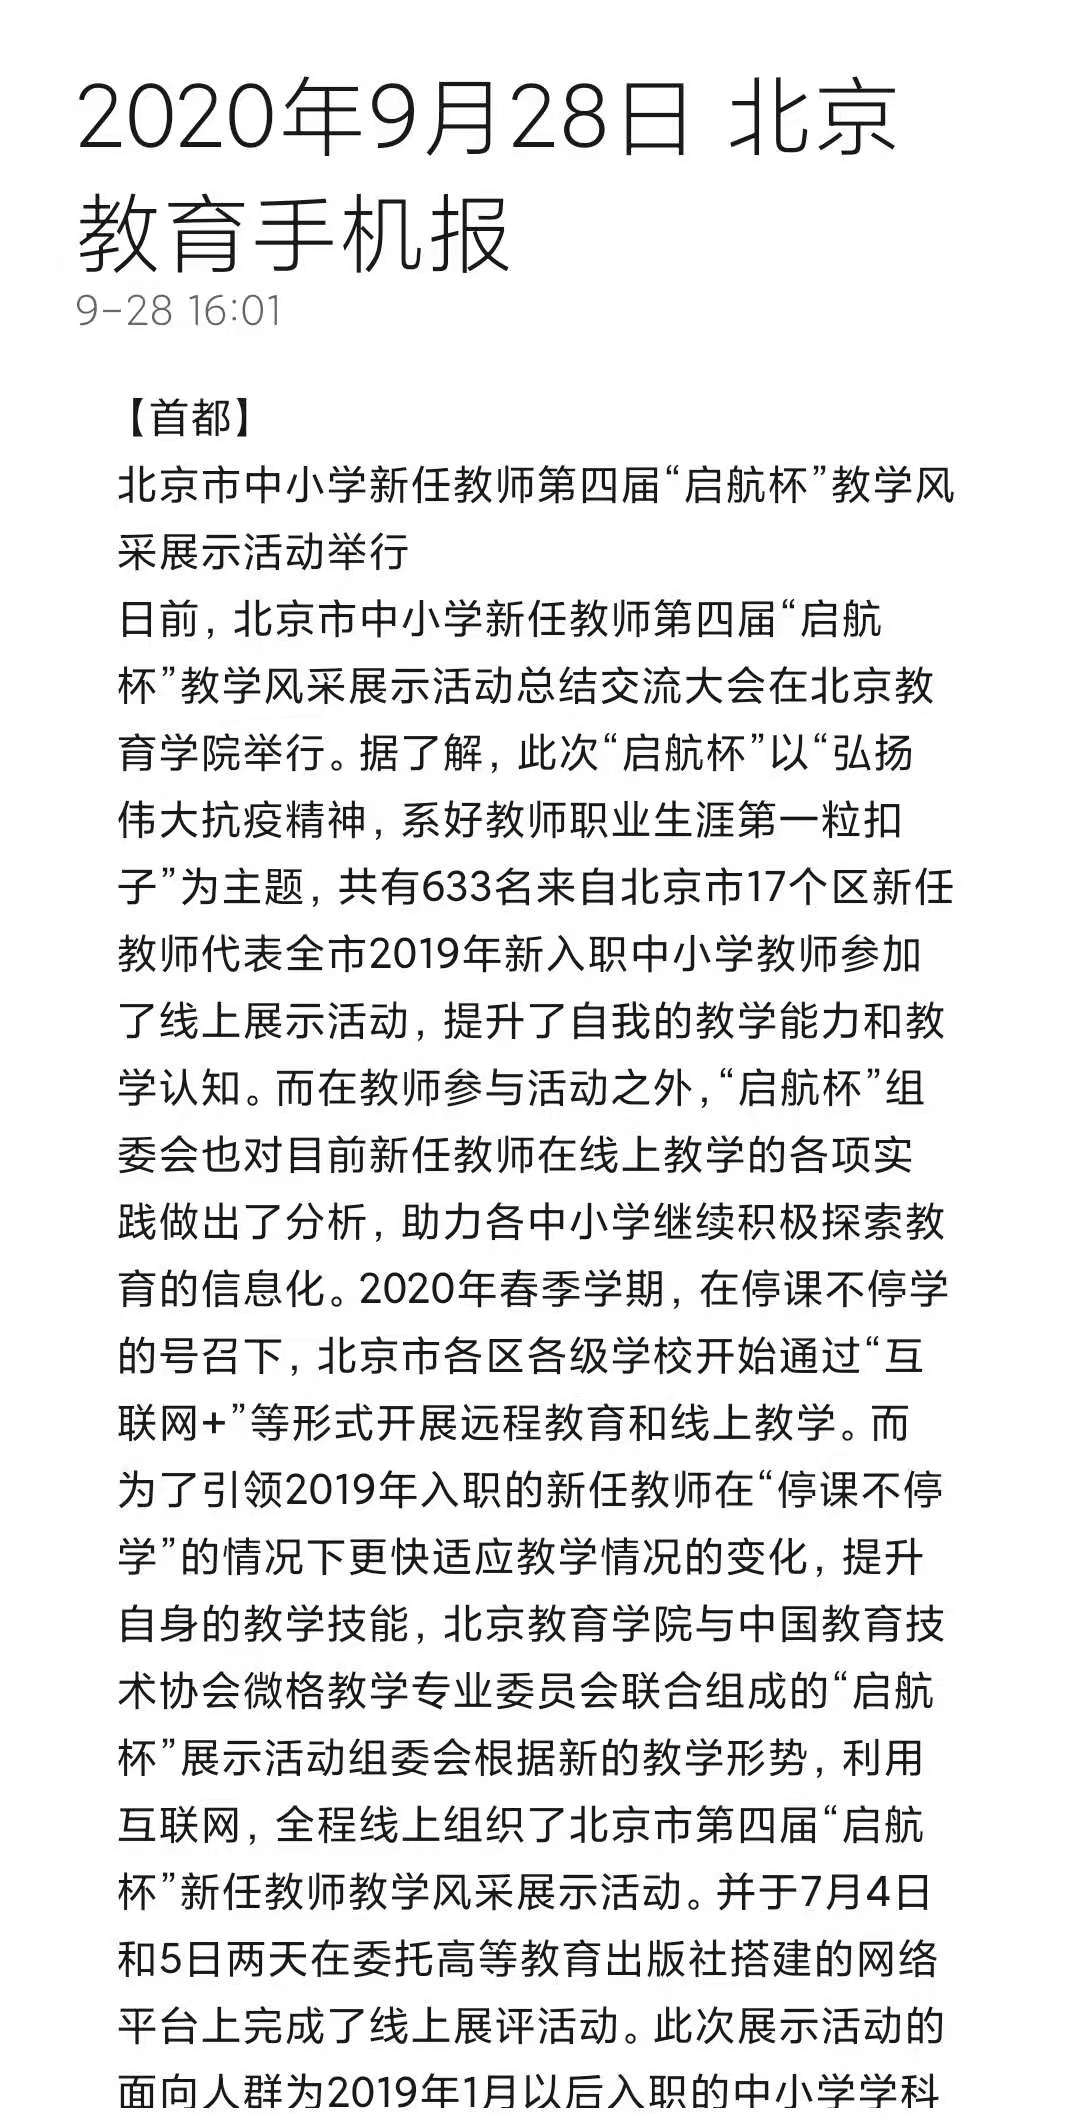 北京教育手机报20200928.jpg